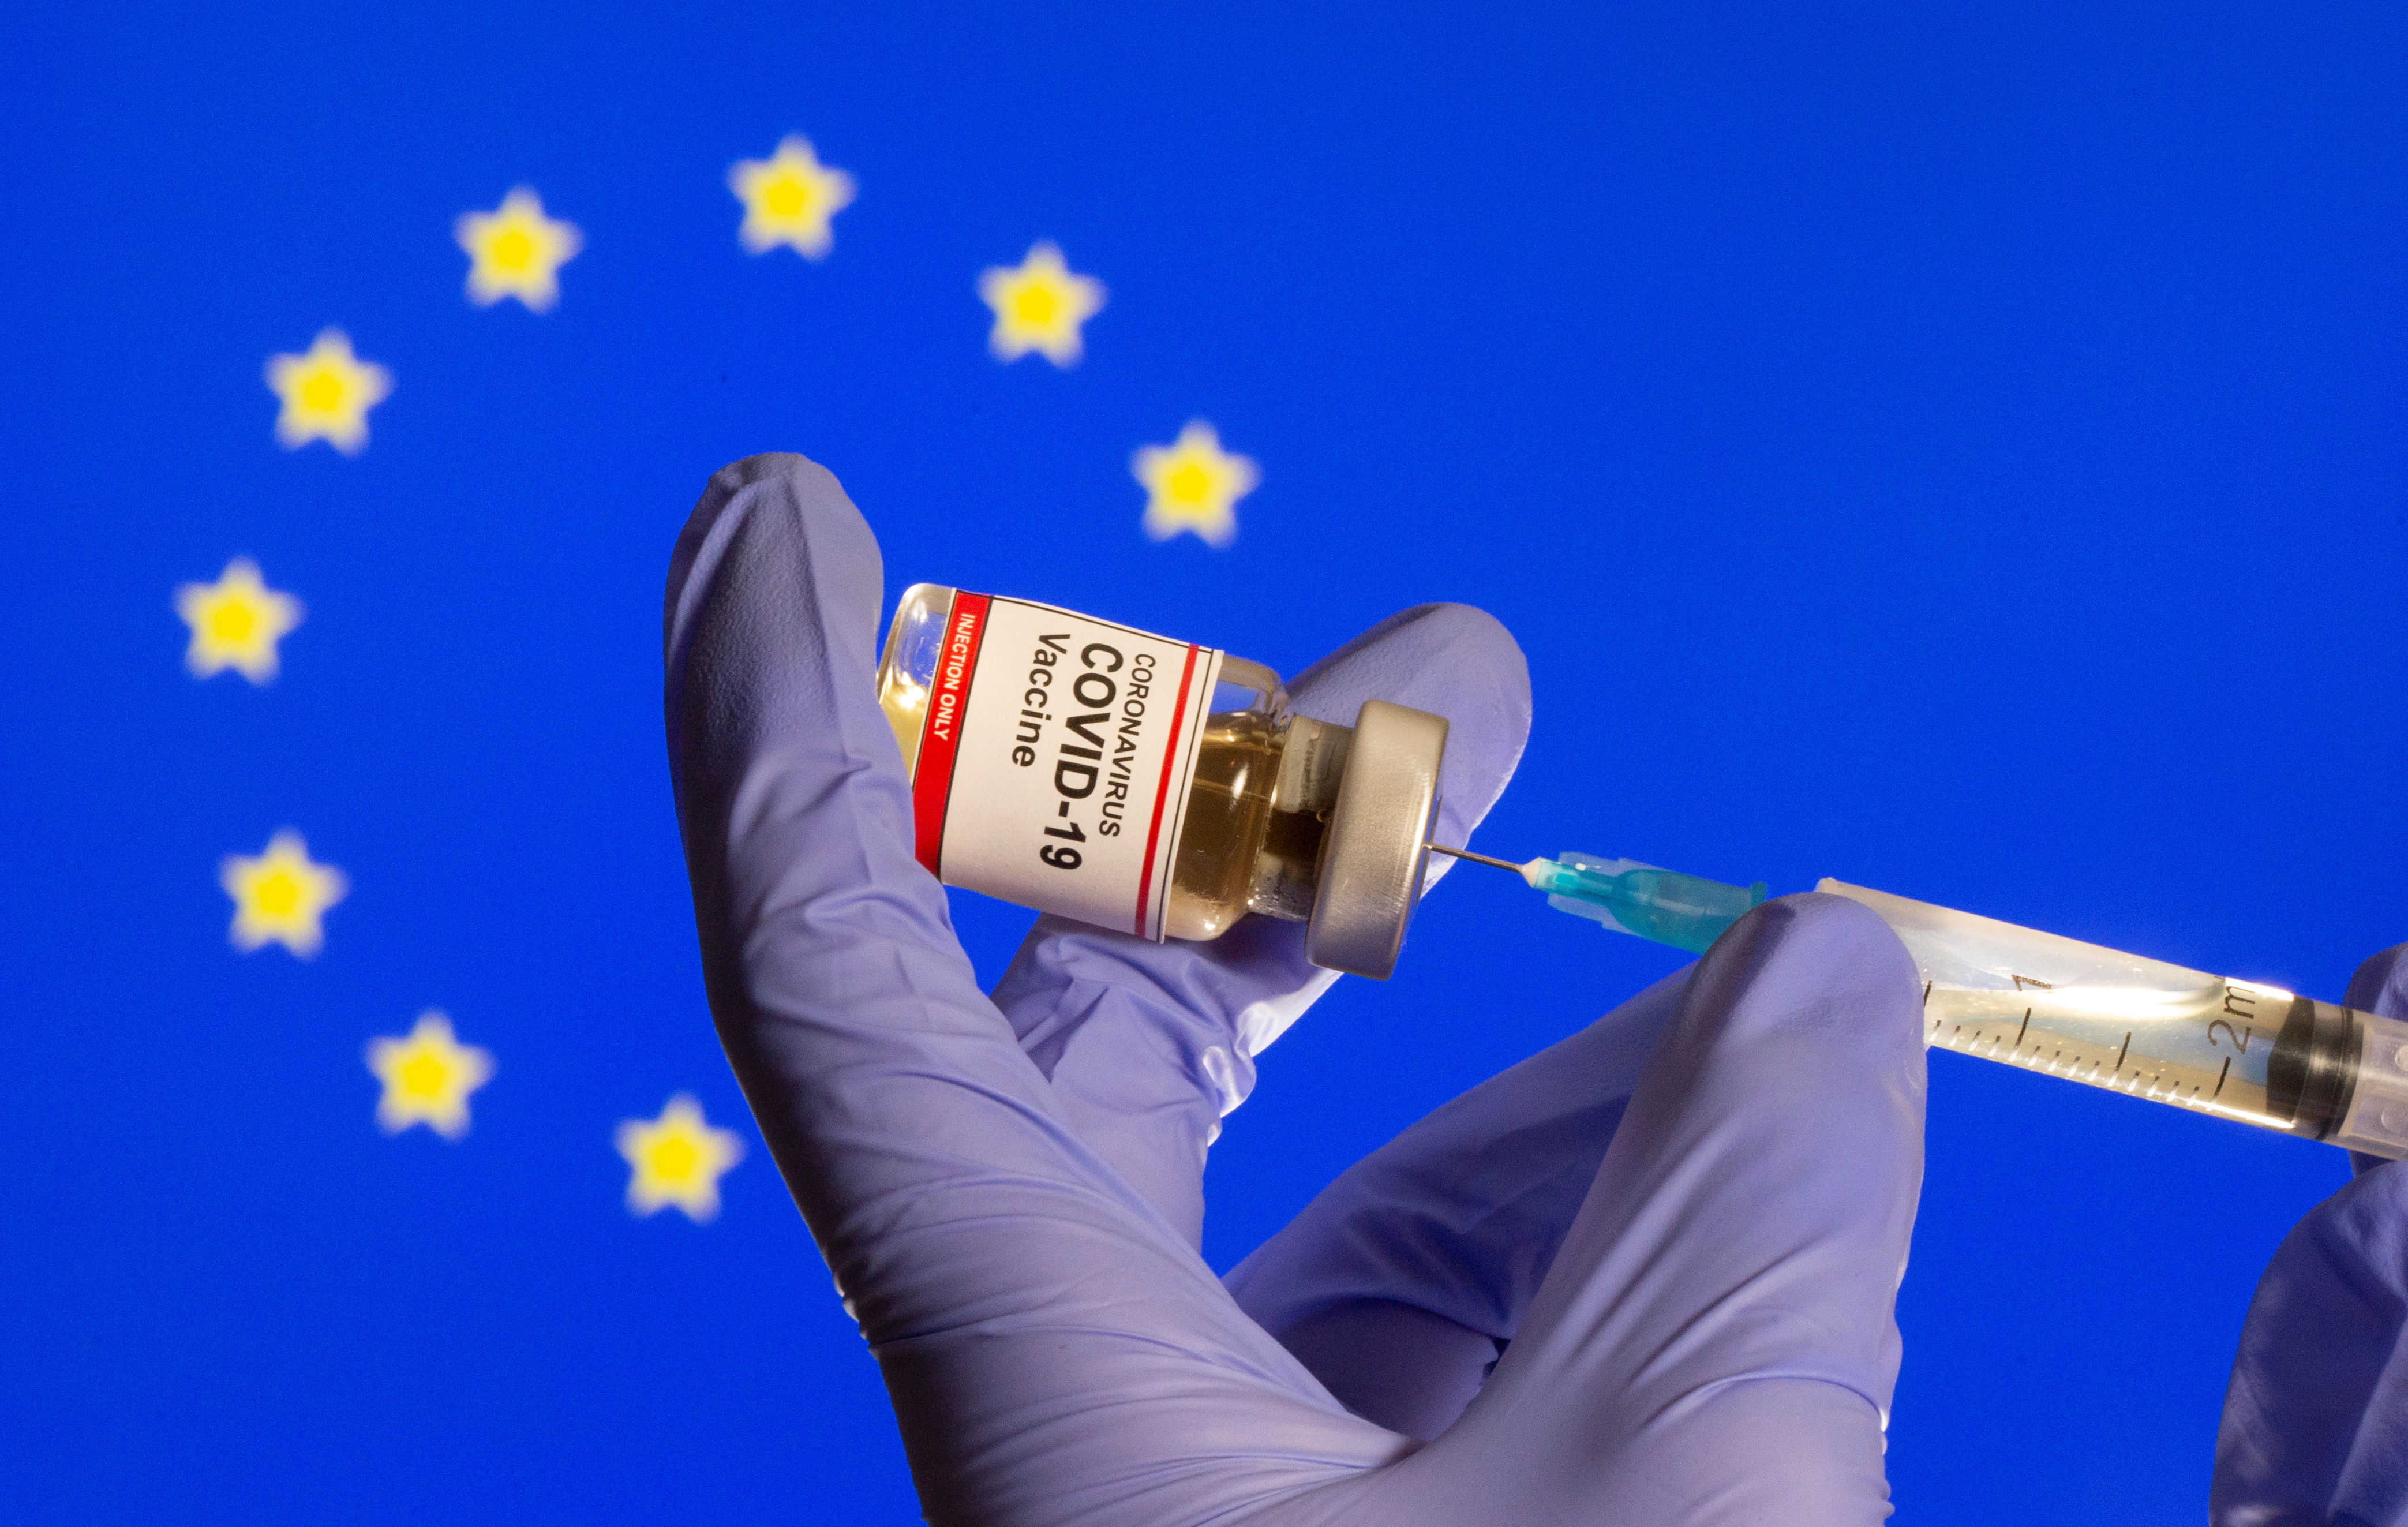 Европе вакцины. Евросоюз вакцинация. Как зарегистрировать вакцину в Евросоюзе. Лекарства на фоне флага РФ. Будут ли санкции на лекарства из ЕС.